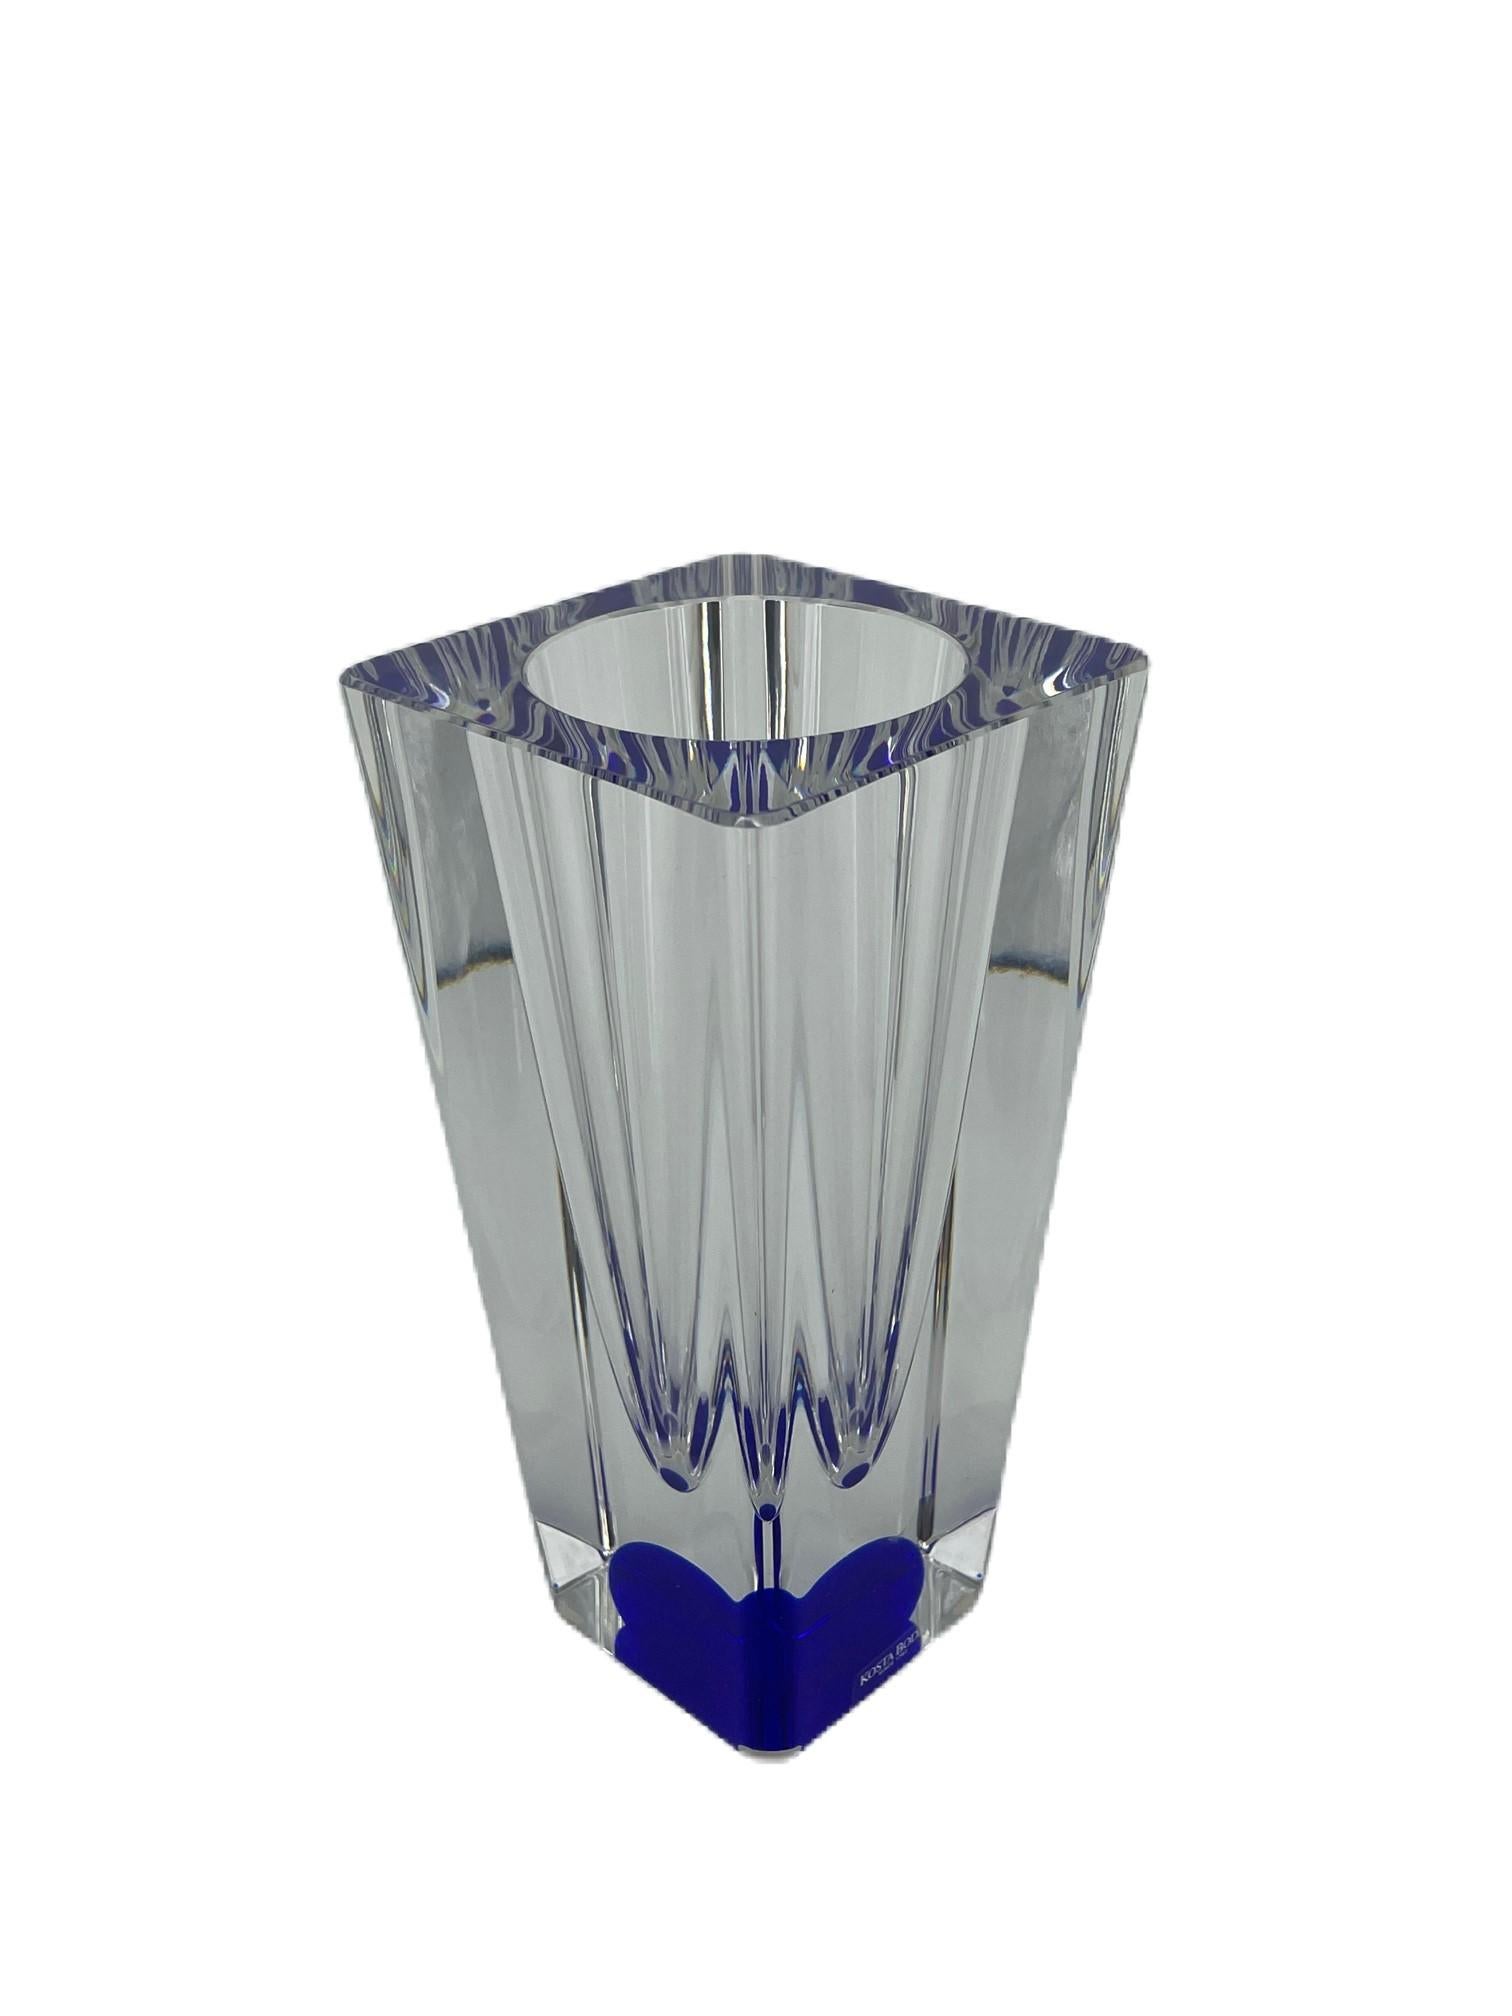 Kosta Boda von Bertil Vallien. Schöne und sehr einzigartige und seltene Vase.
Klare Vase aus Kunstglas mit einer kobaltfarbenen Kugel im Inneren der Vase.

Bertil Vallien
allien ist der Sohn des Malers und Predigers Nils Wallin (1911-1987) und